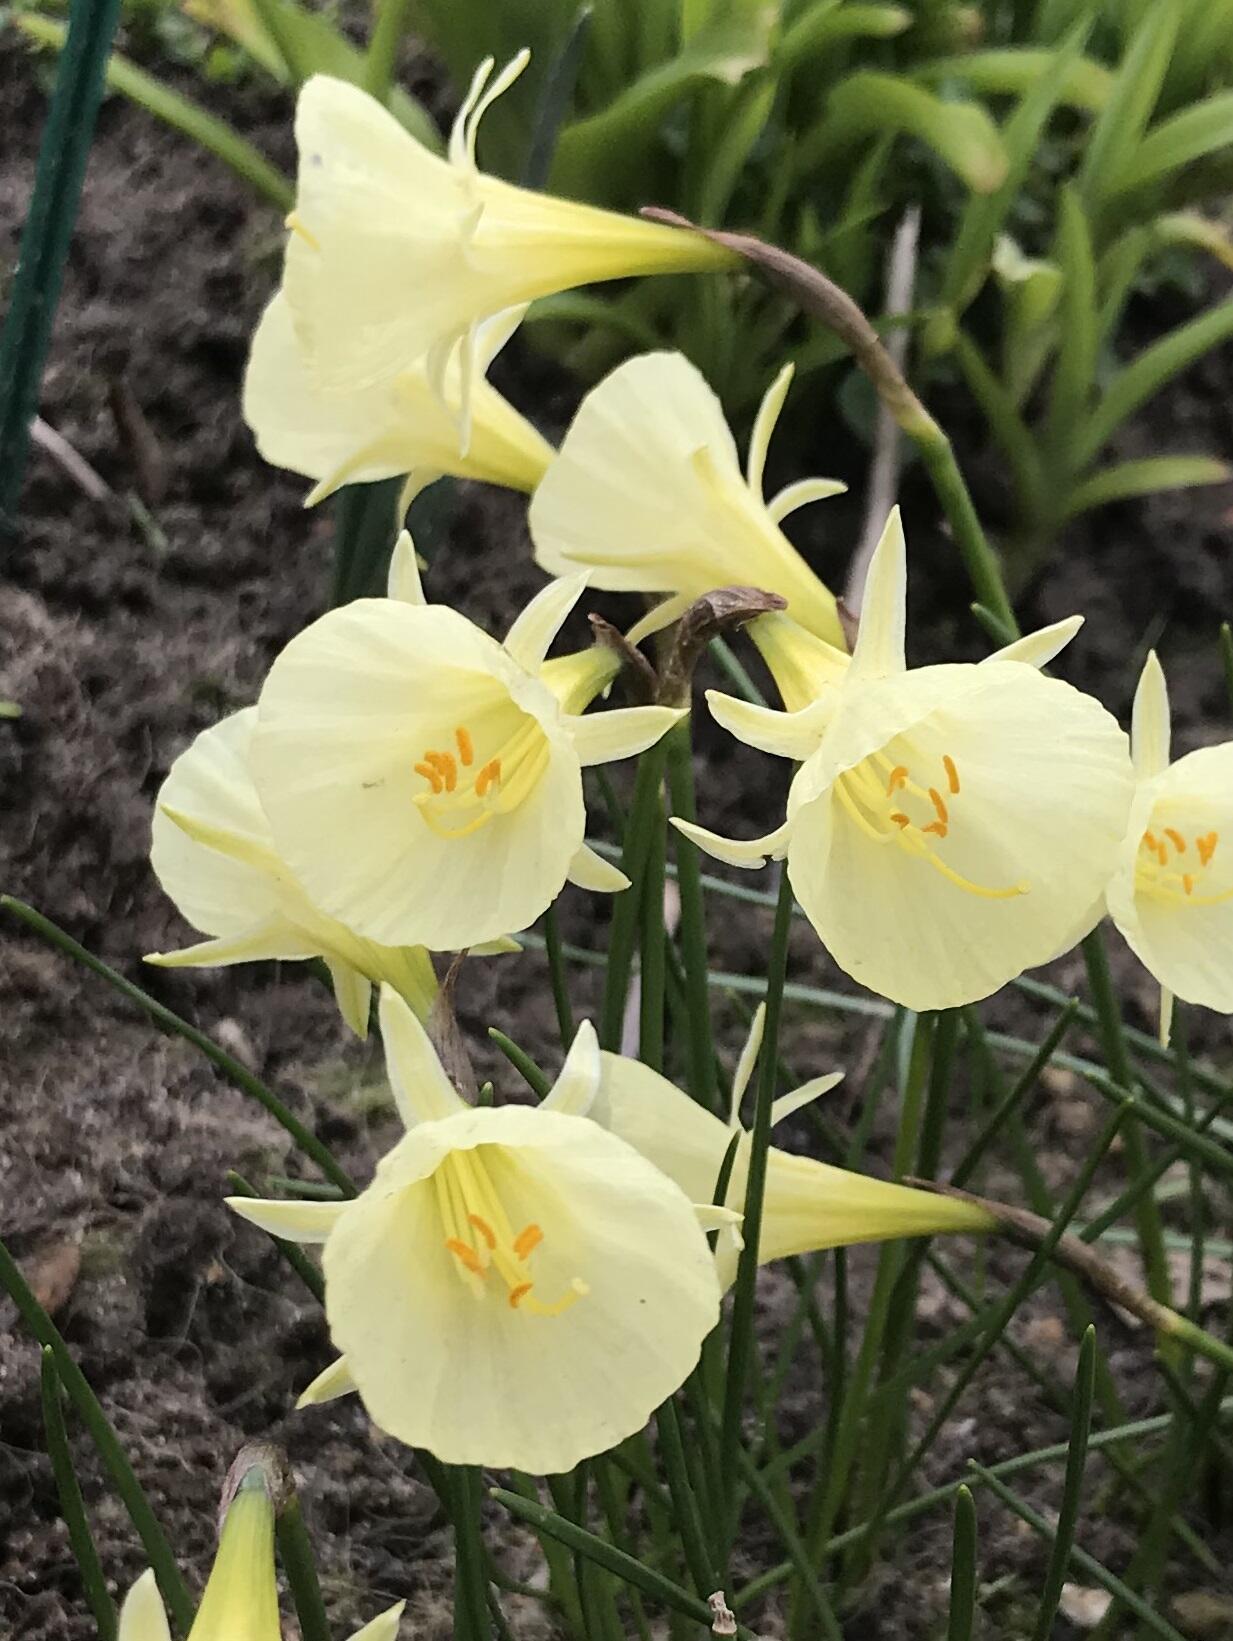 Narcissus Artic bells